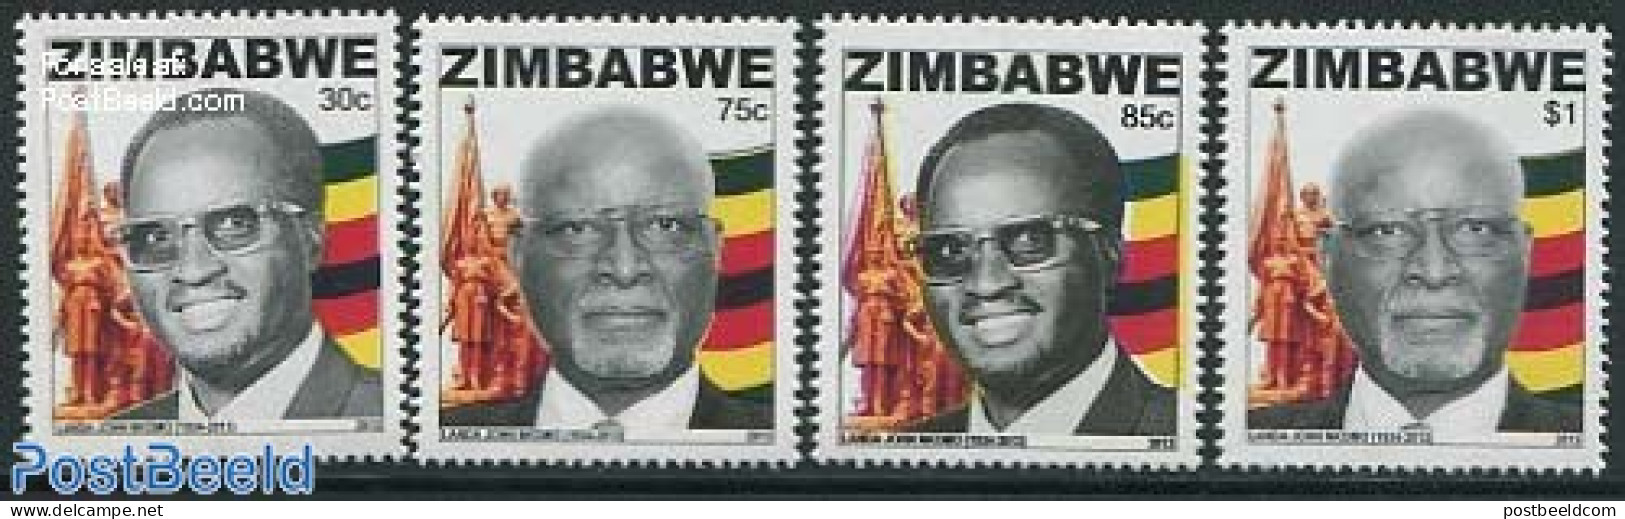 Zimbabwe 2013 Heroes 4v, Mint NH - Zimbabwe (1980-...)